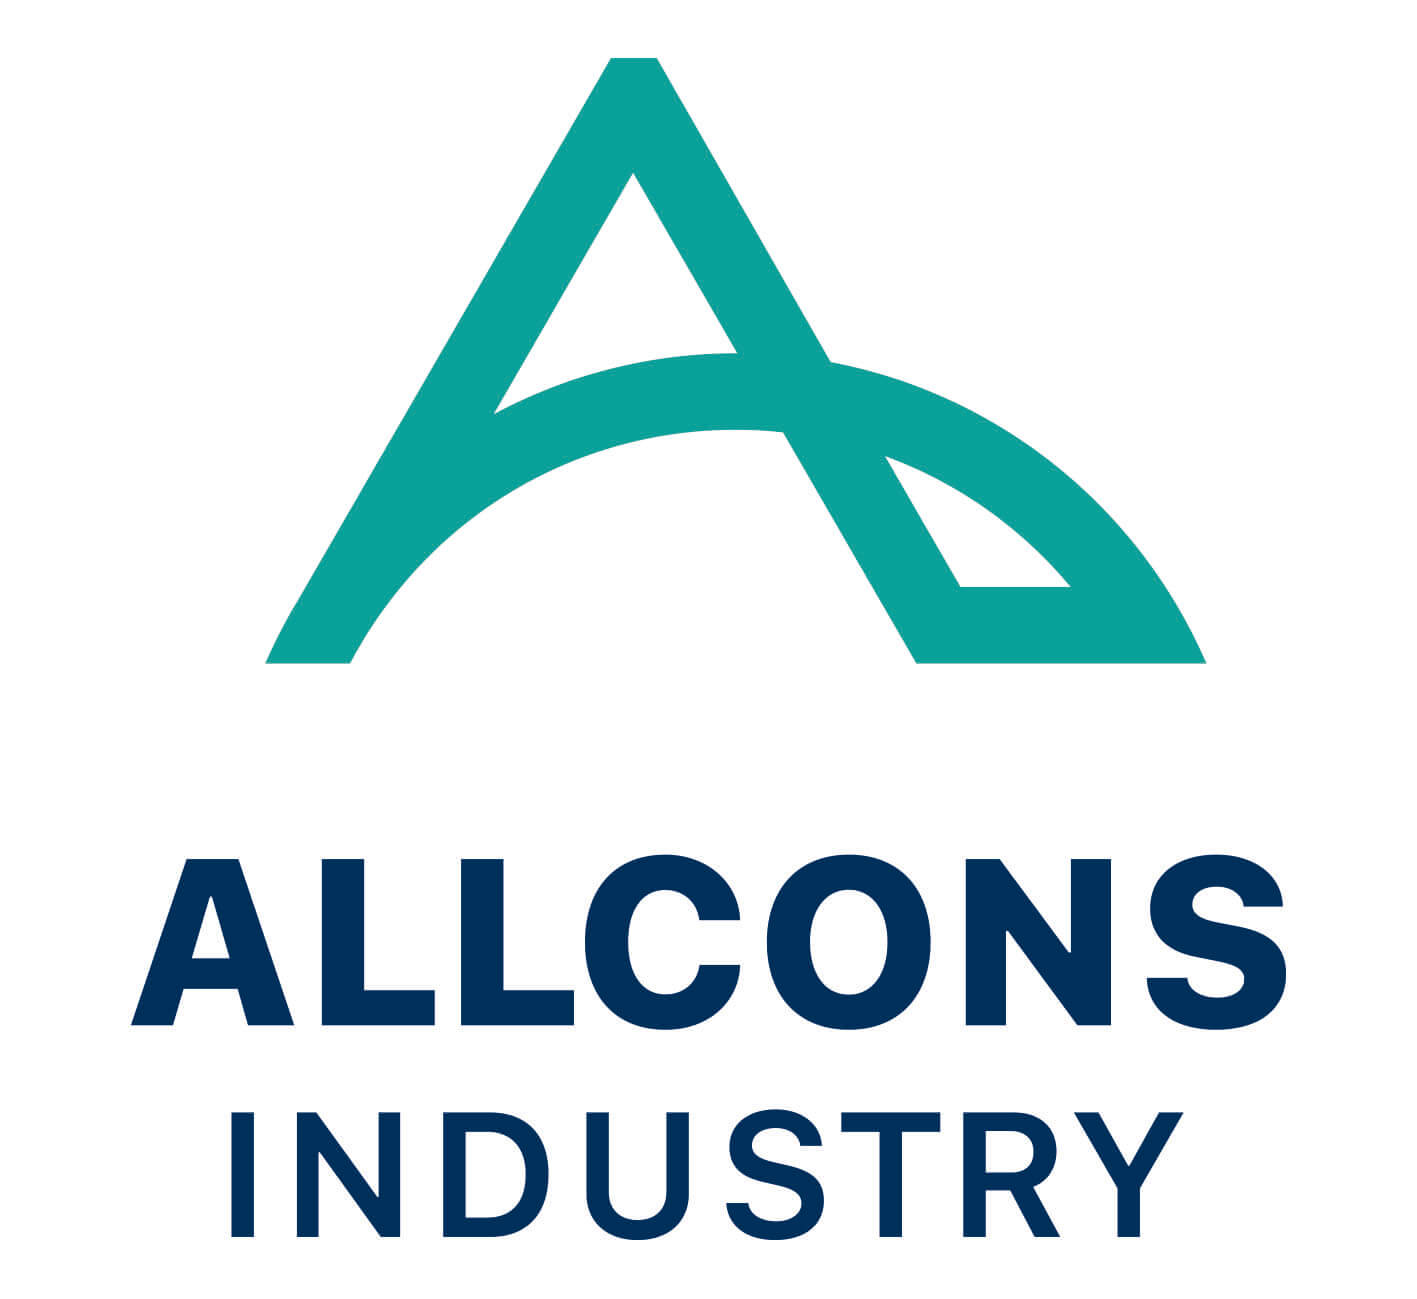 Allcons Industry